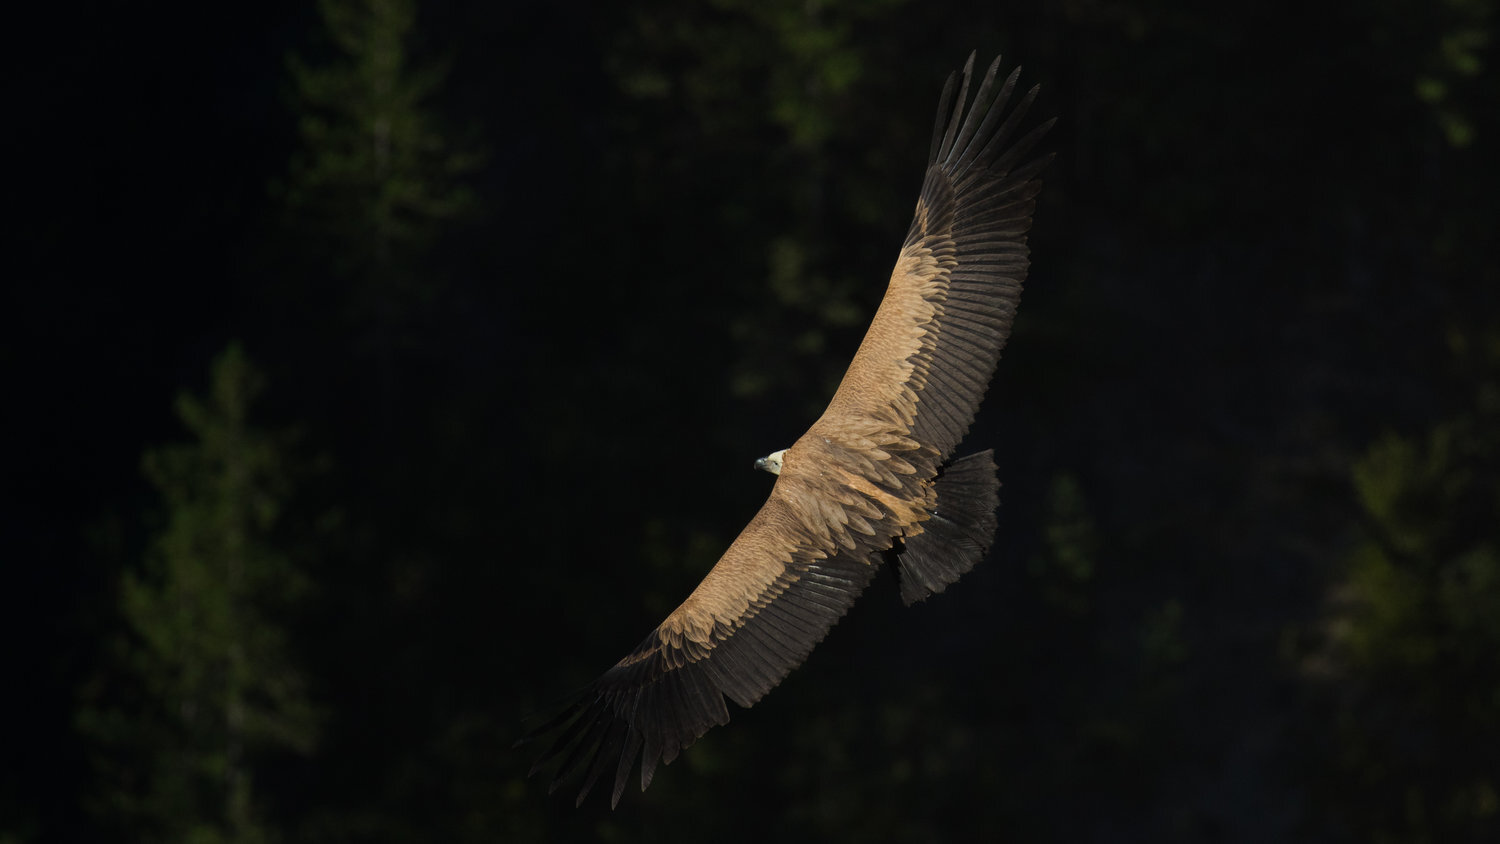 vautour fauve+salva fauna+france (4).jpg